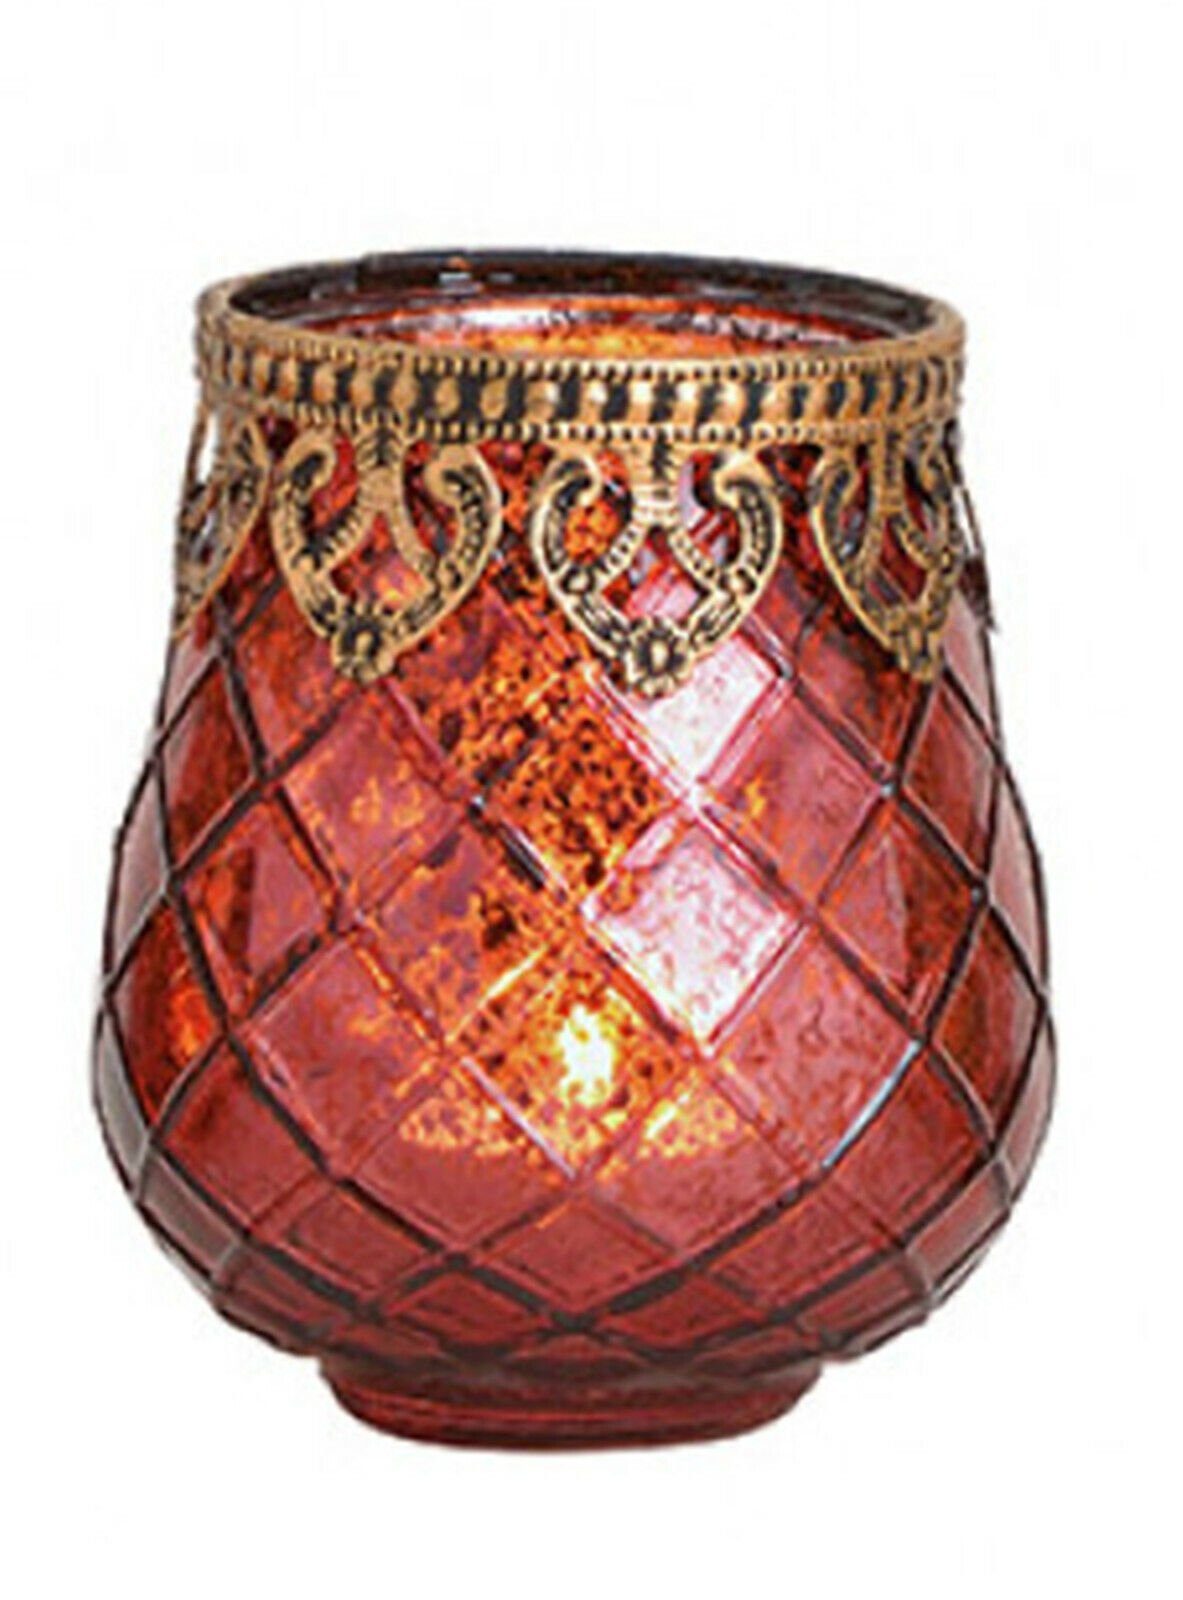 Taschen4life Windlicht Glas Windlicht Indien 602 (3 Stück) (3er Set), orientalische Windlichte, Teelichthalter, Shabby chic & Bohemien Stil 3 Stück rot